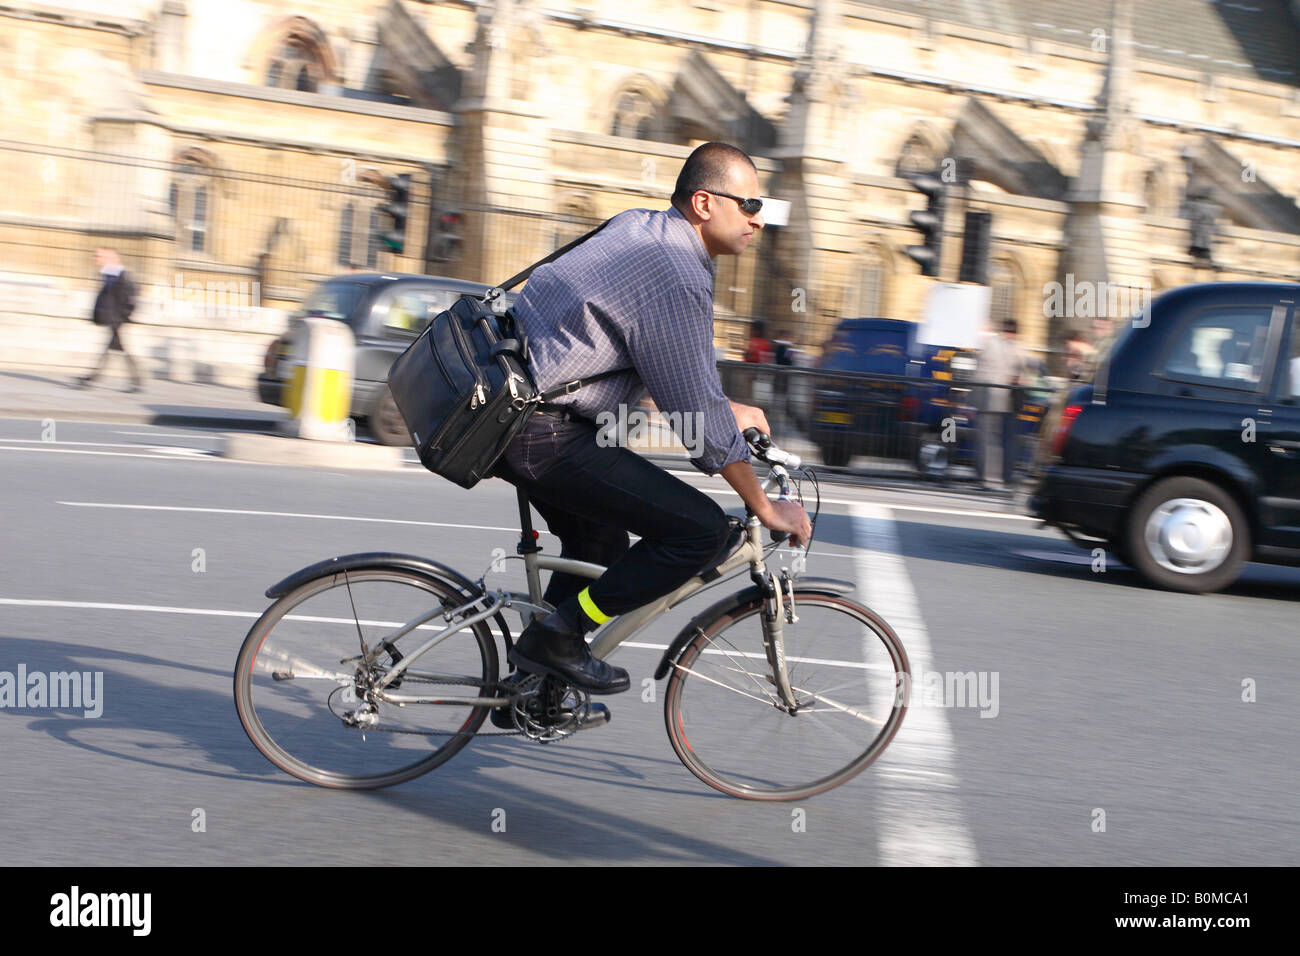 London-Pendler-Radfahrer fährt Fahrrad Fahrrad um Bundesplatz keinen Schutzhelm tragen Stockfoto